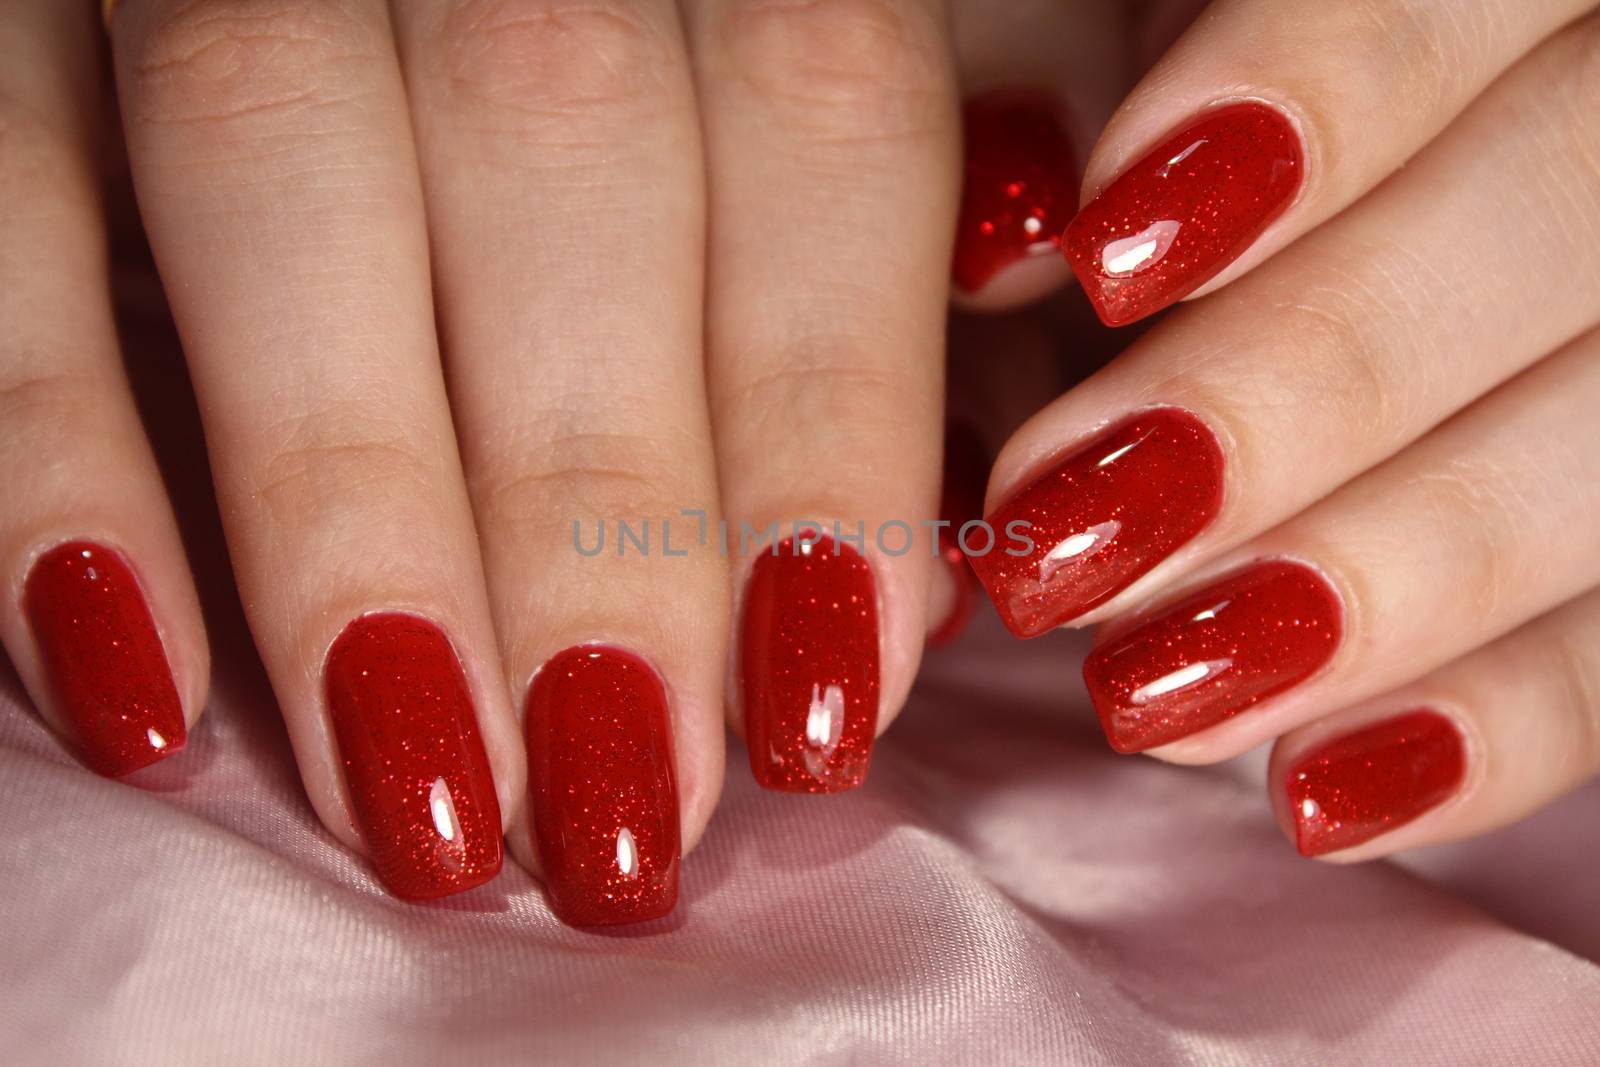 Bright red manicure design by SmirMaxStock